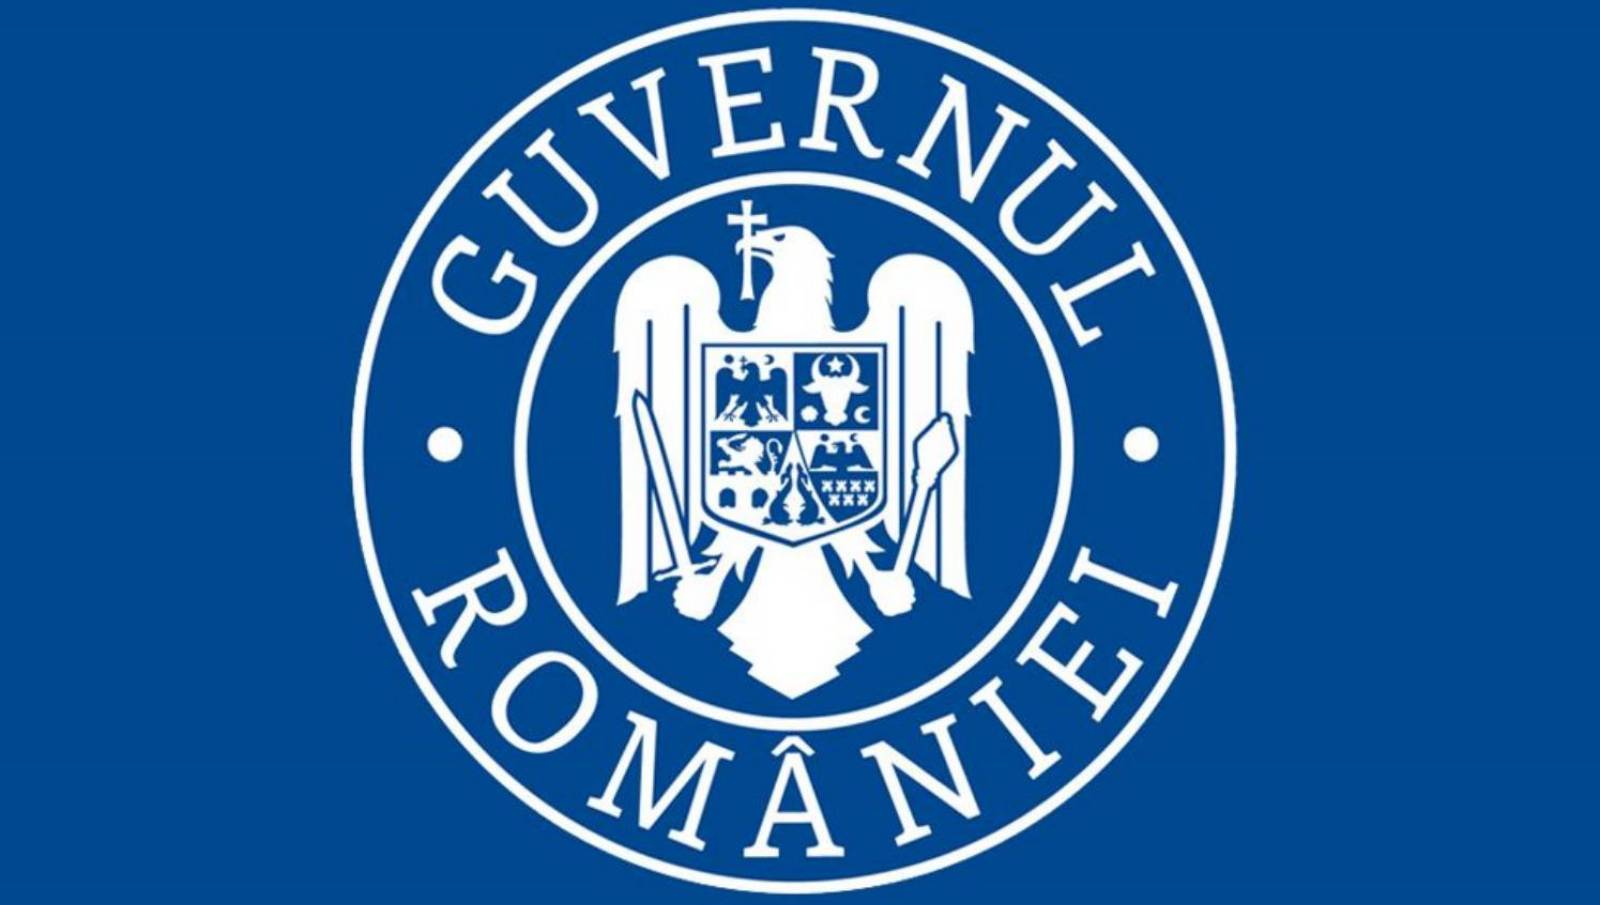 Les élections scolaires du gouvernement roumain